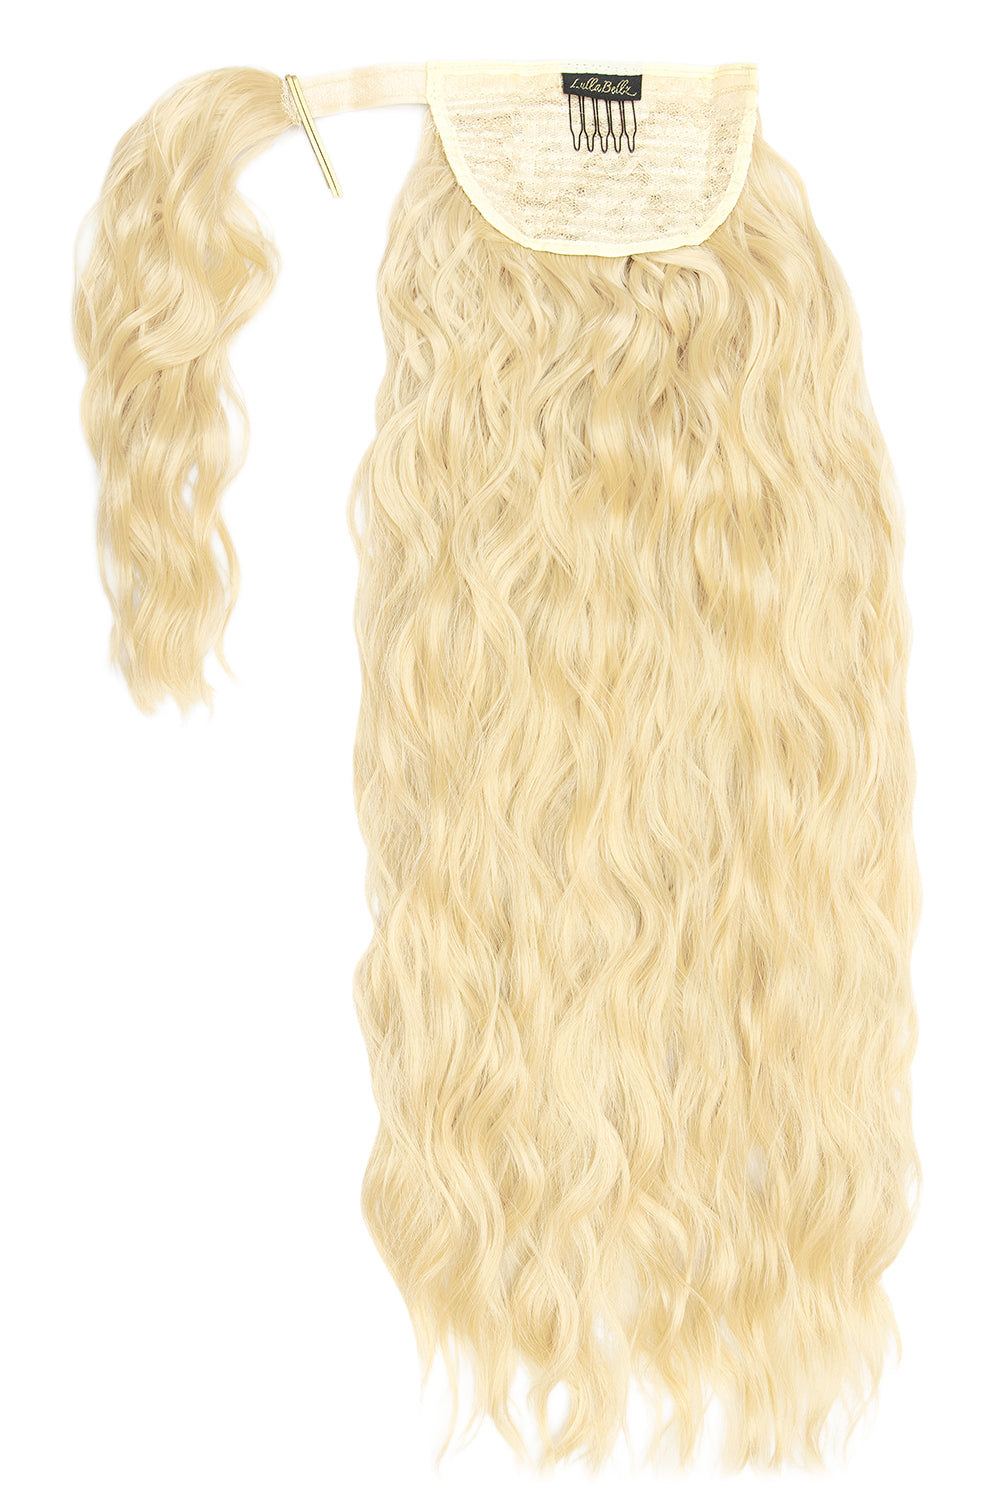 26" Textured Wavy Grande Lengths Wraparound Ponytail - LullaBellz  - Pure Blonde